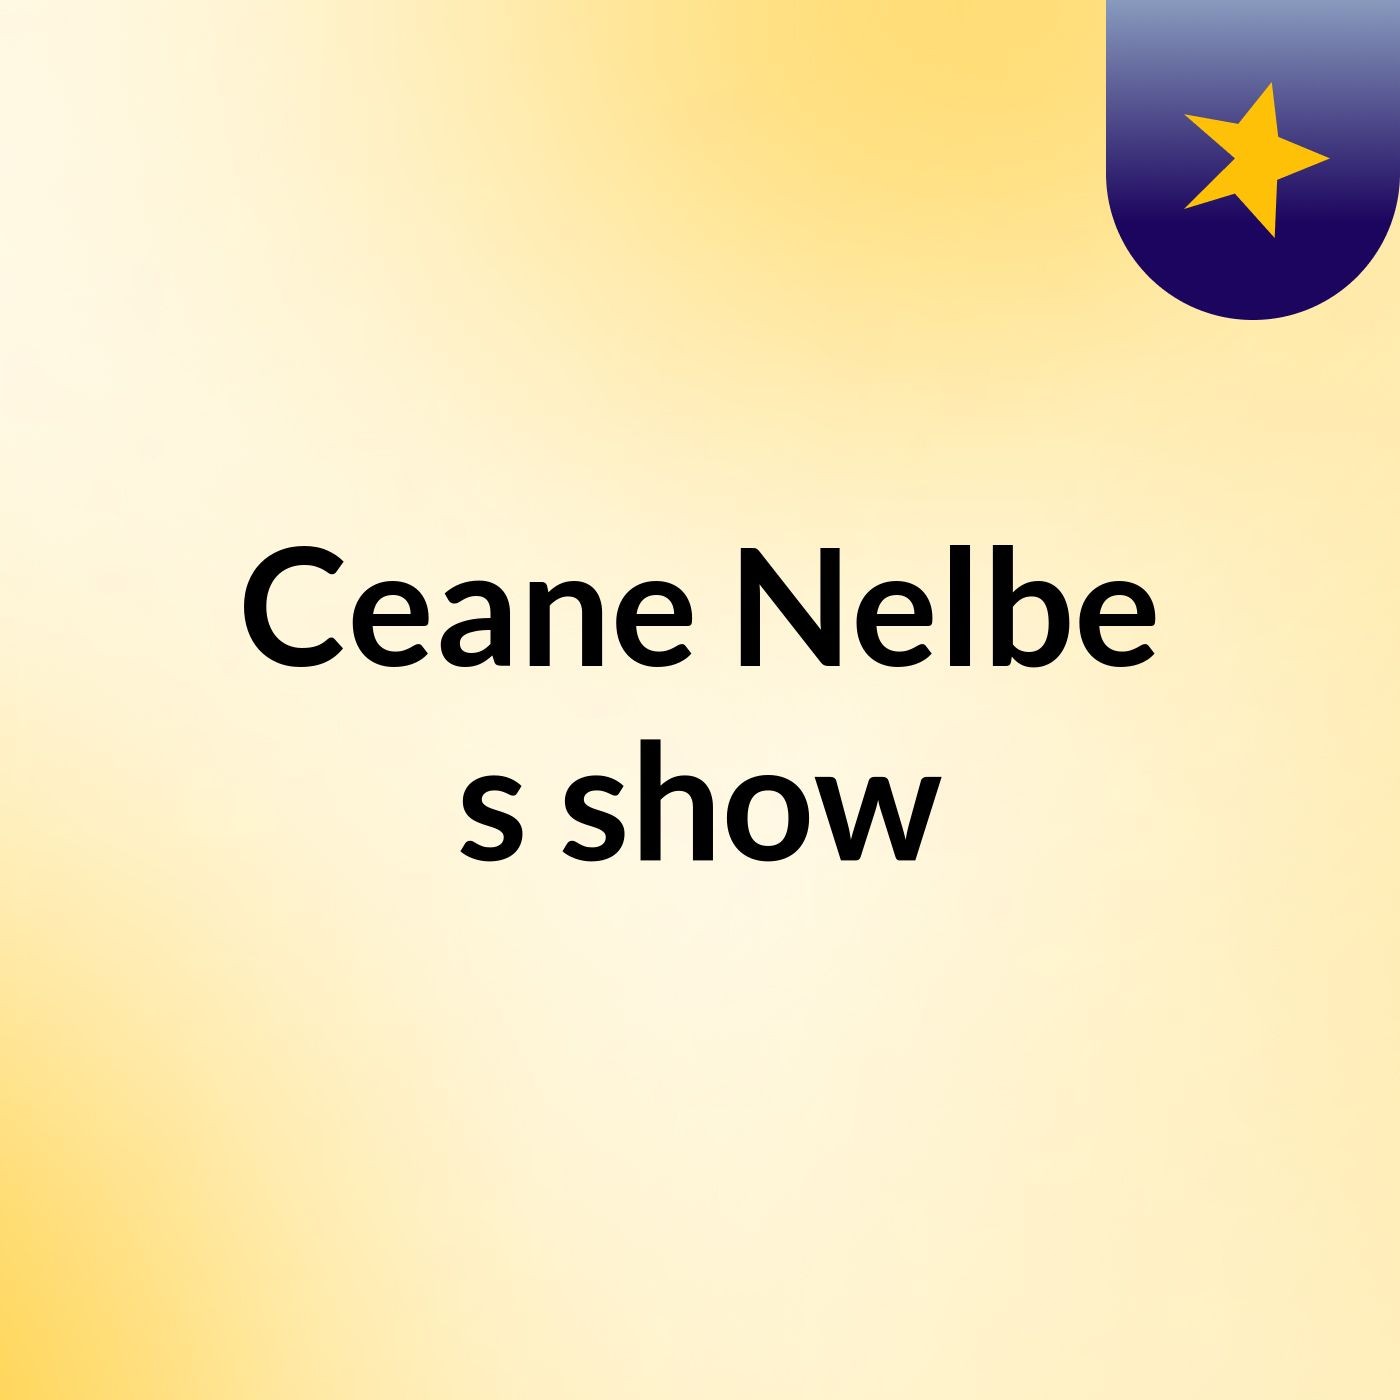 Ceane Nelbe's show